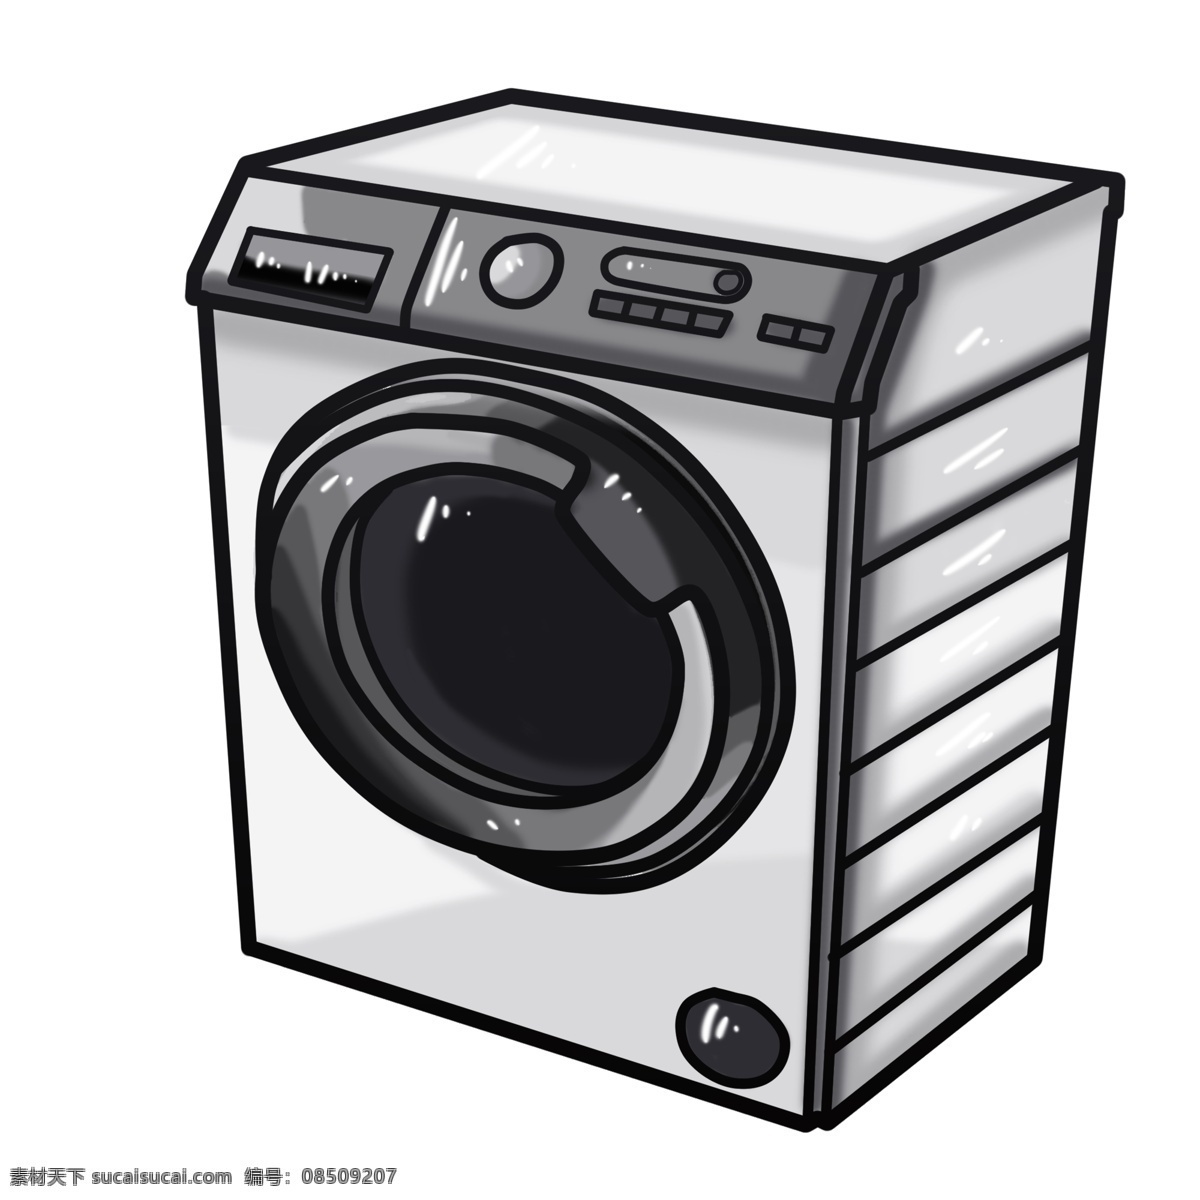 灰色 全自动 洗衣机 插画 灰色洗衣机 旋转洗衣机 智能洗衣机 手绘洗衣机 洗衣服 家电